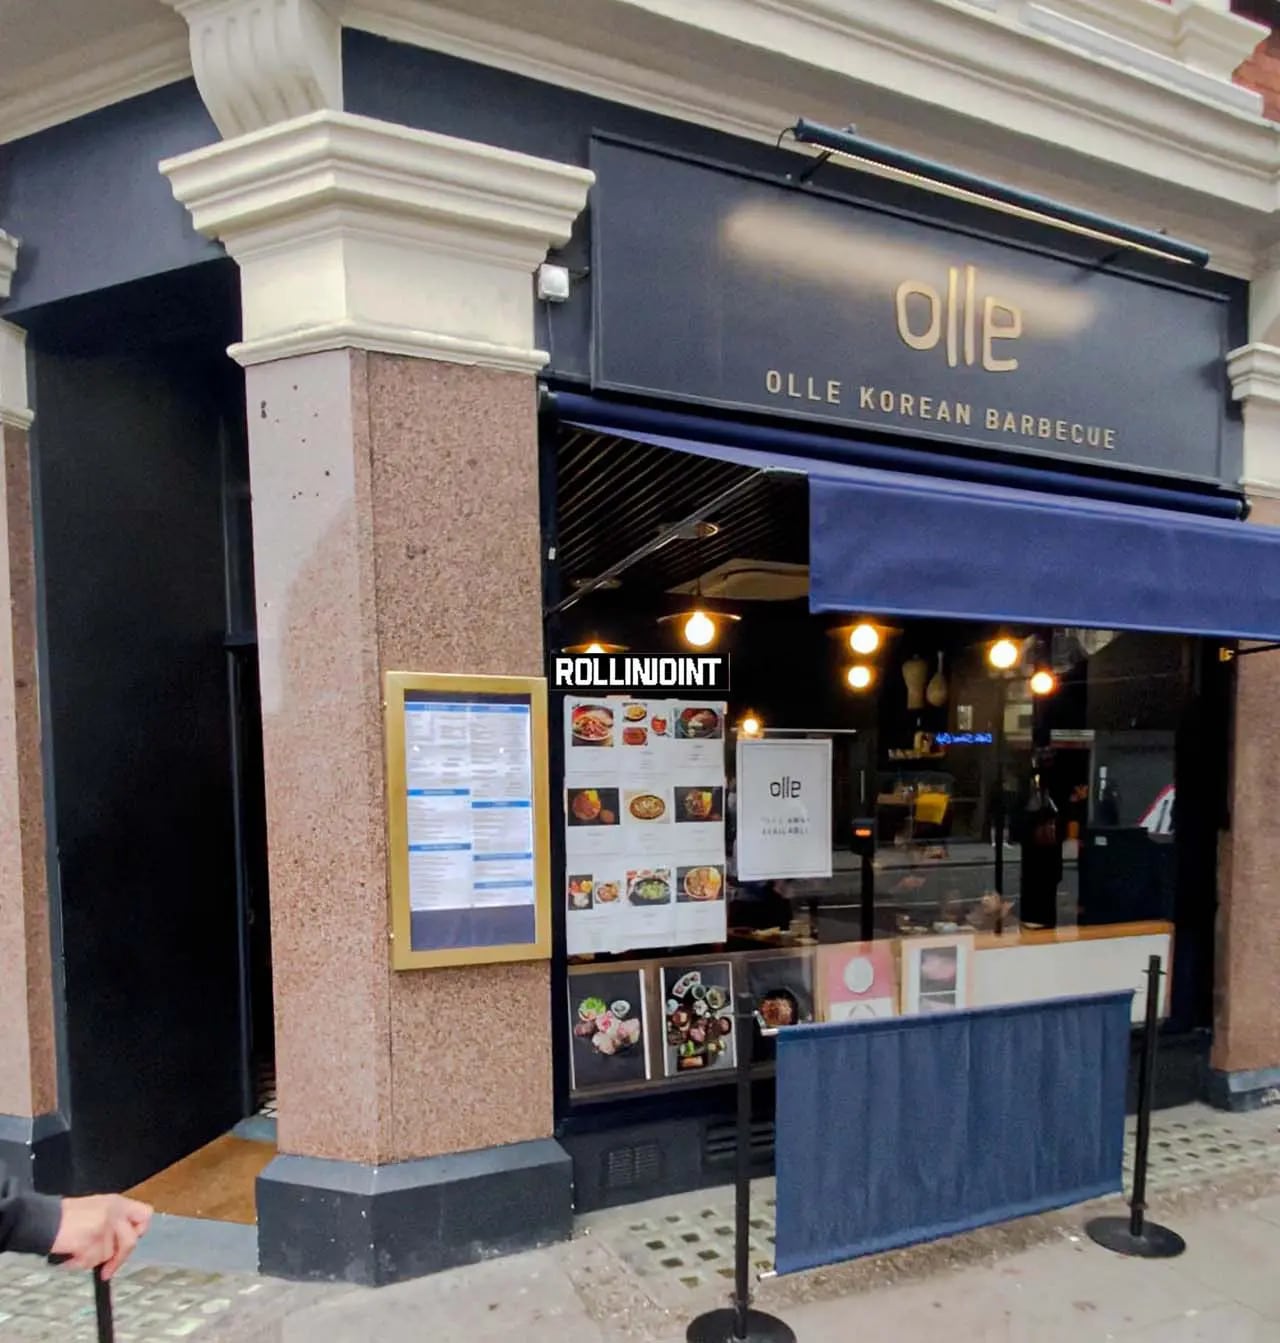 Olle Korean restaurant in London